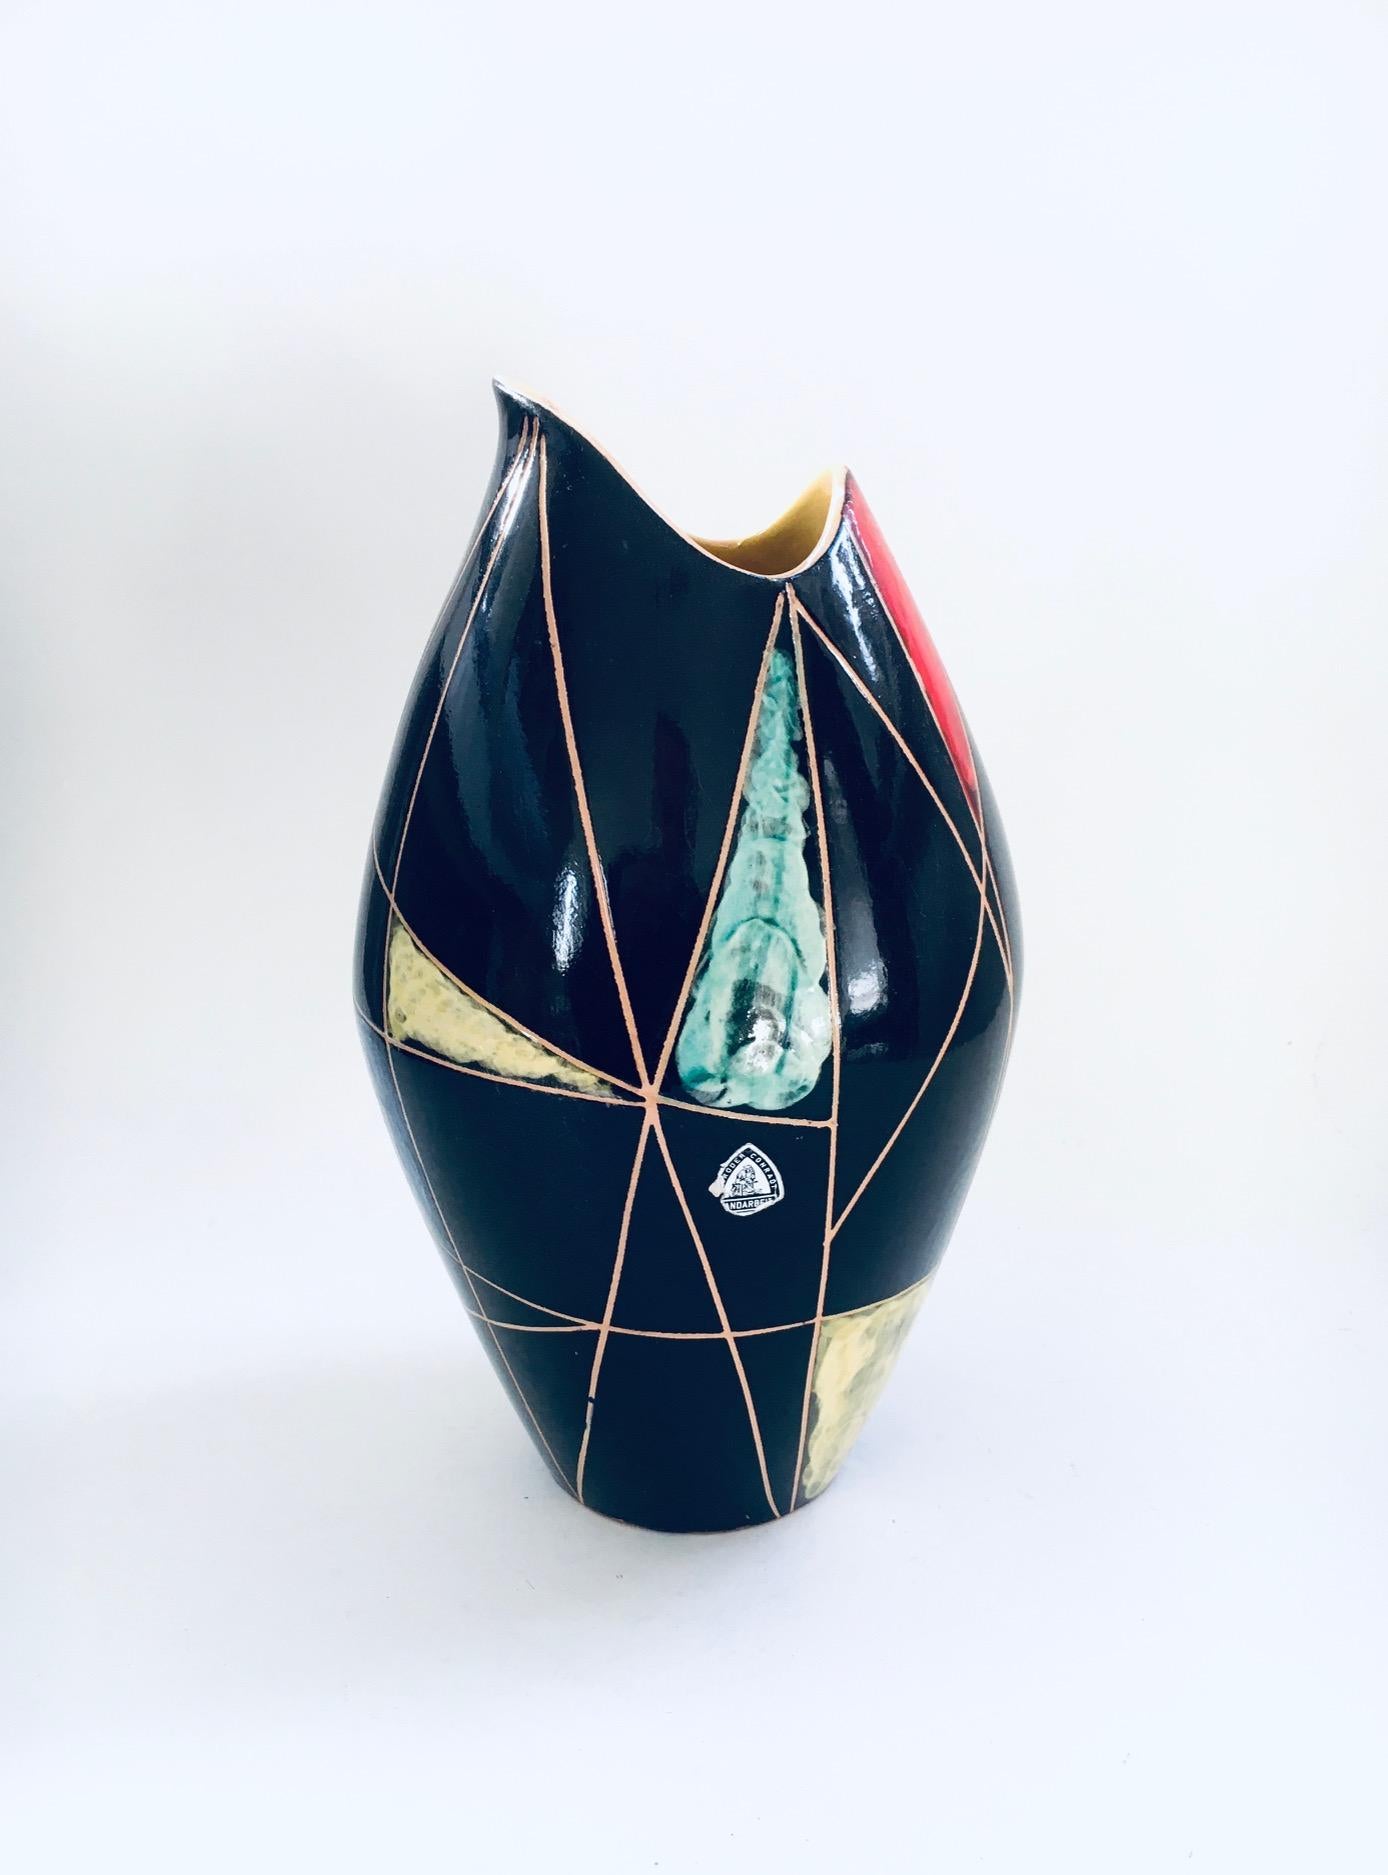 Vintage Midcentury Modern Art Ceramics KRETA 41815 Modell Vase. Hergestellt in Westdeutschland von Gebruder Conradt, 1960er Jahre. Handgefertigte Kunstvase mit typischen Farben und geometrischen Formen aus dem Atomzeitalter. Modellvase mit